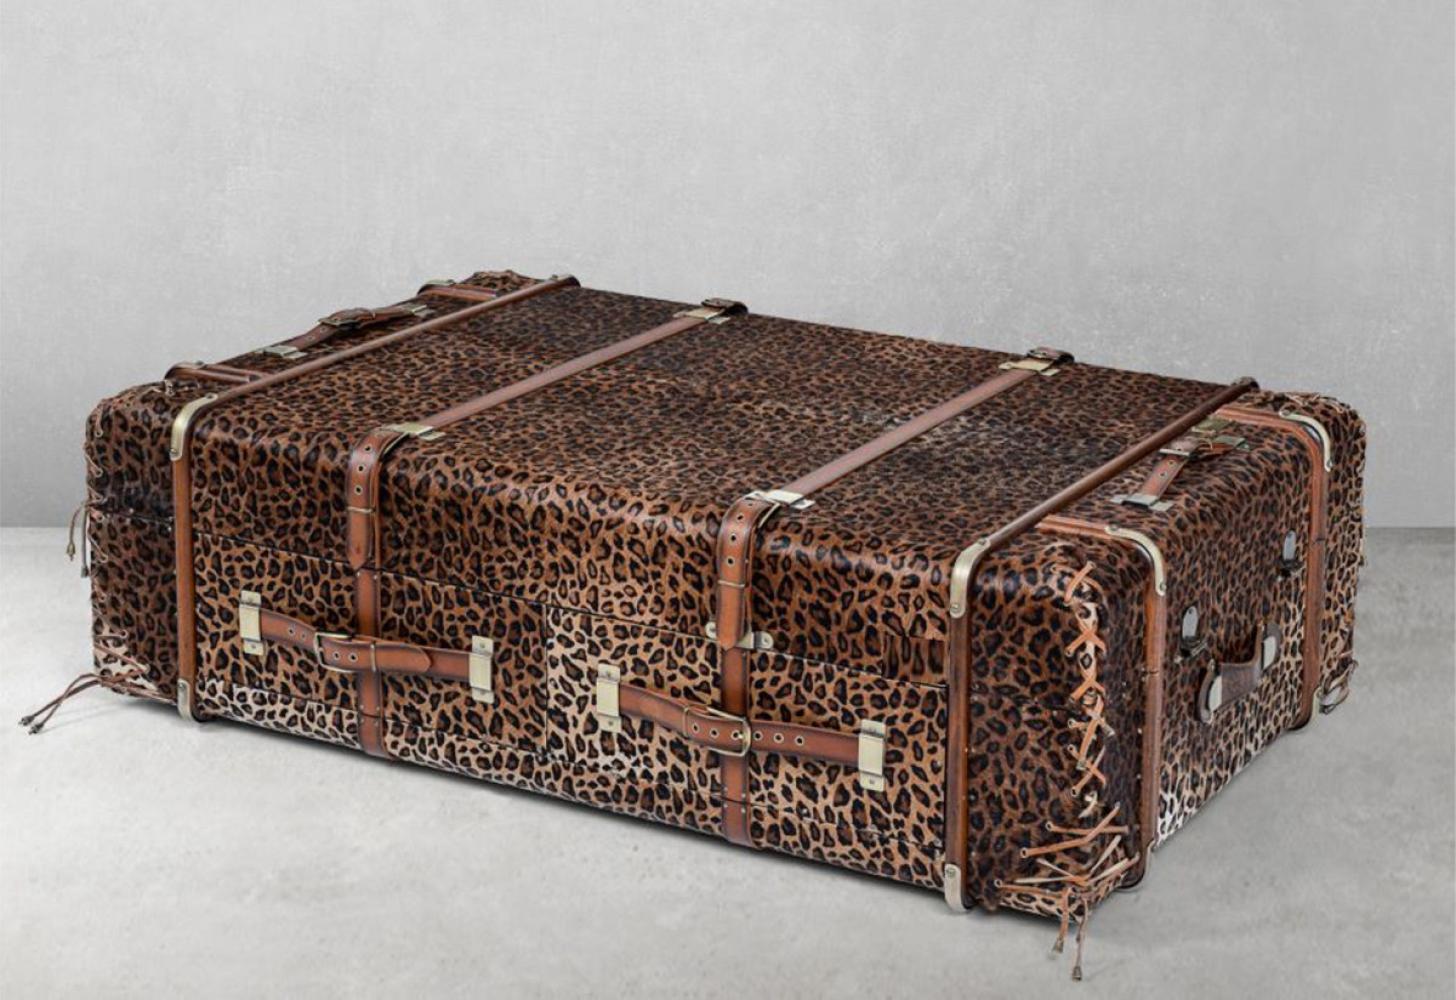 Casa Padrino Luxus Couchtisch in Koffer Optik Leopard / Braun / Messing 140 x 85 x H. 43 cm - Koffer Wohnzimmertisch mit Schubladen und Barfächer - Wohnzimmer Möbel - Luxus Möbel in Koffer Optik Bild 1